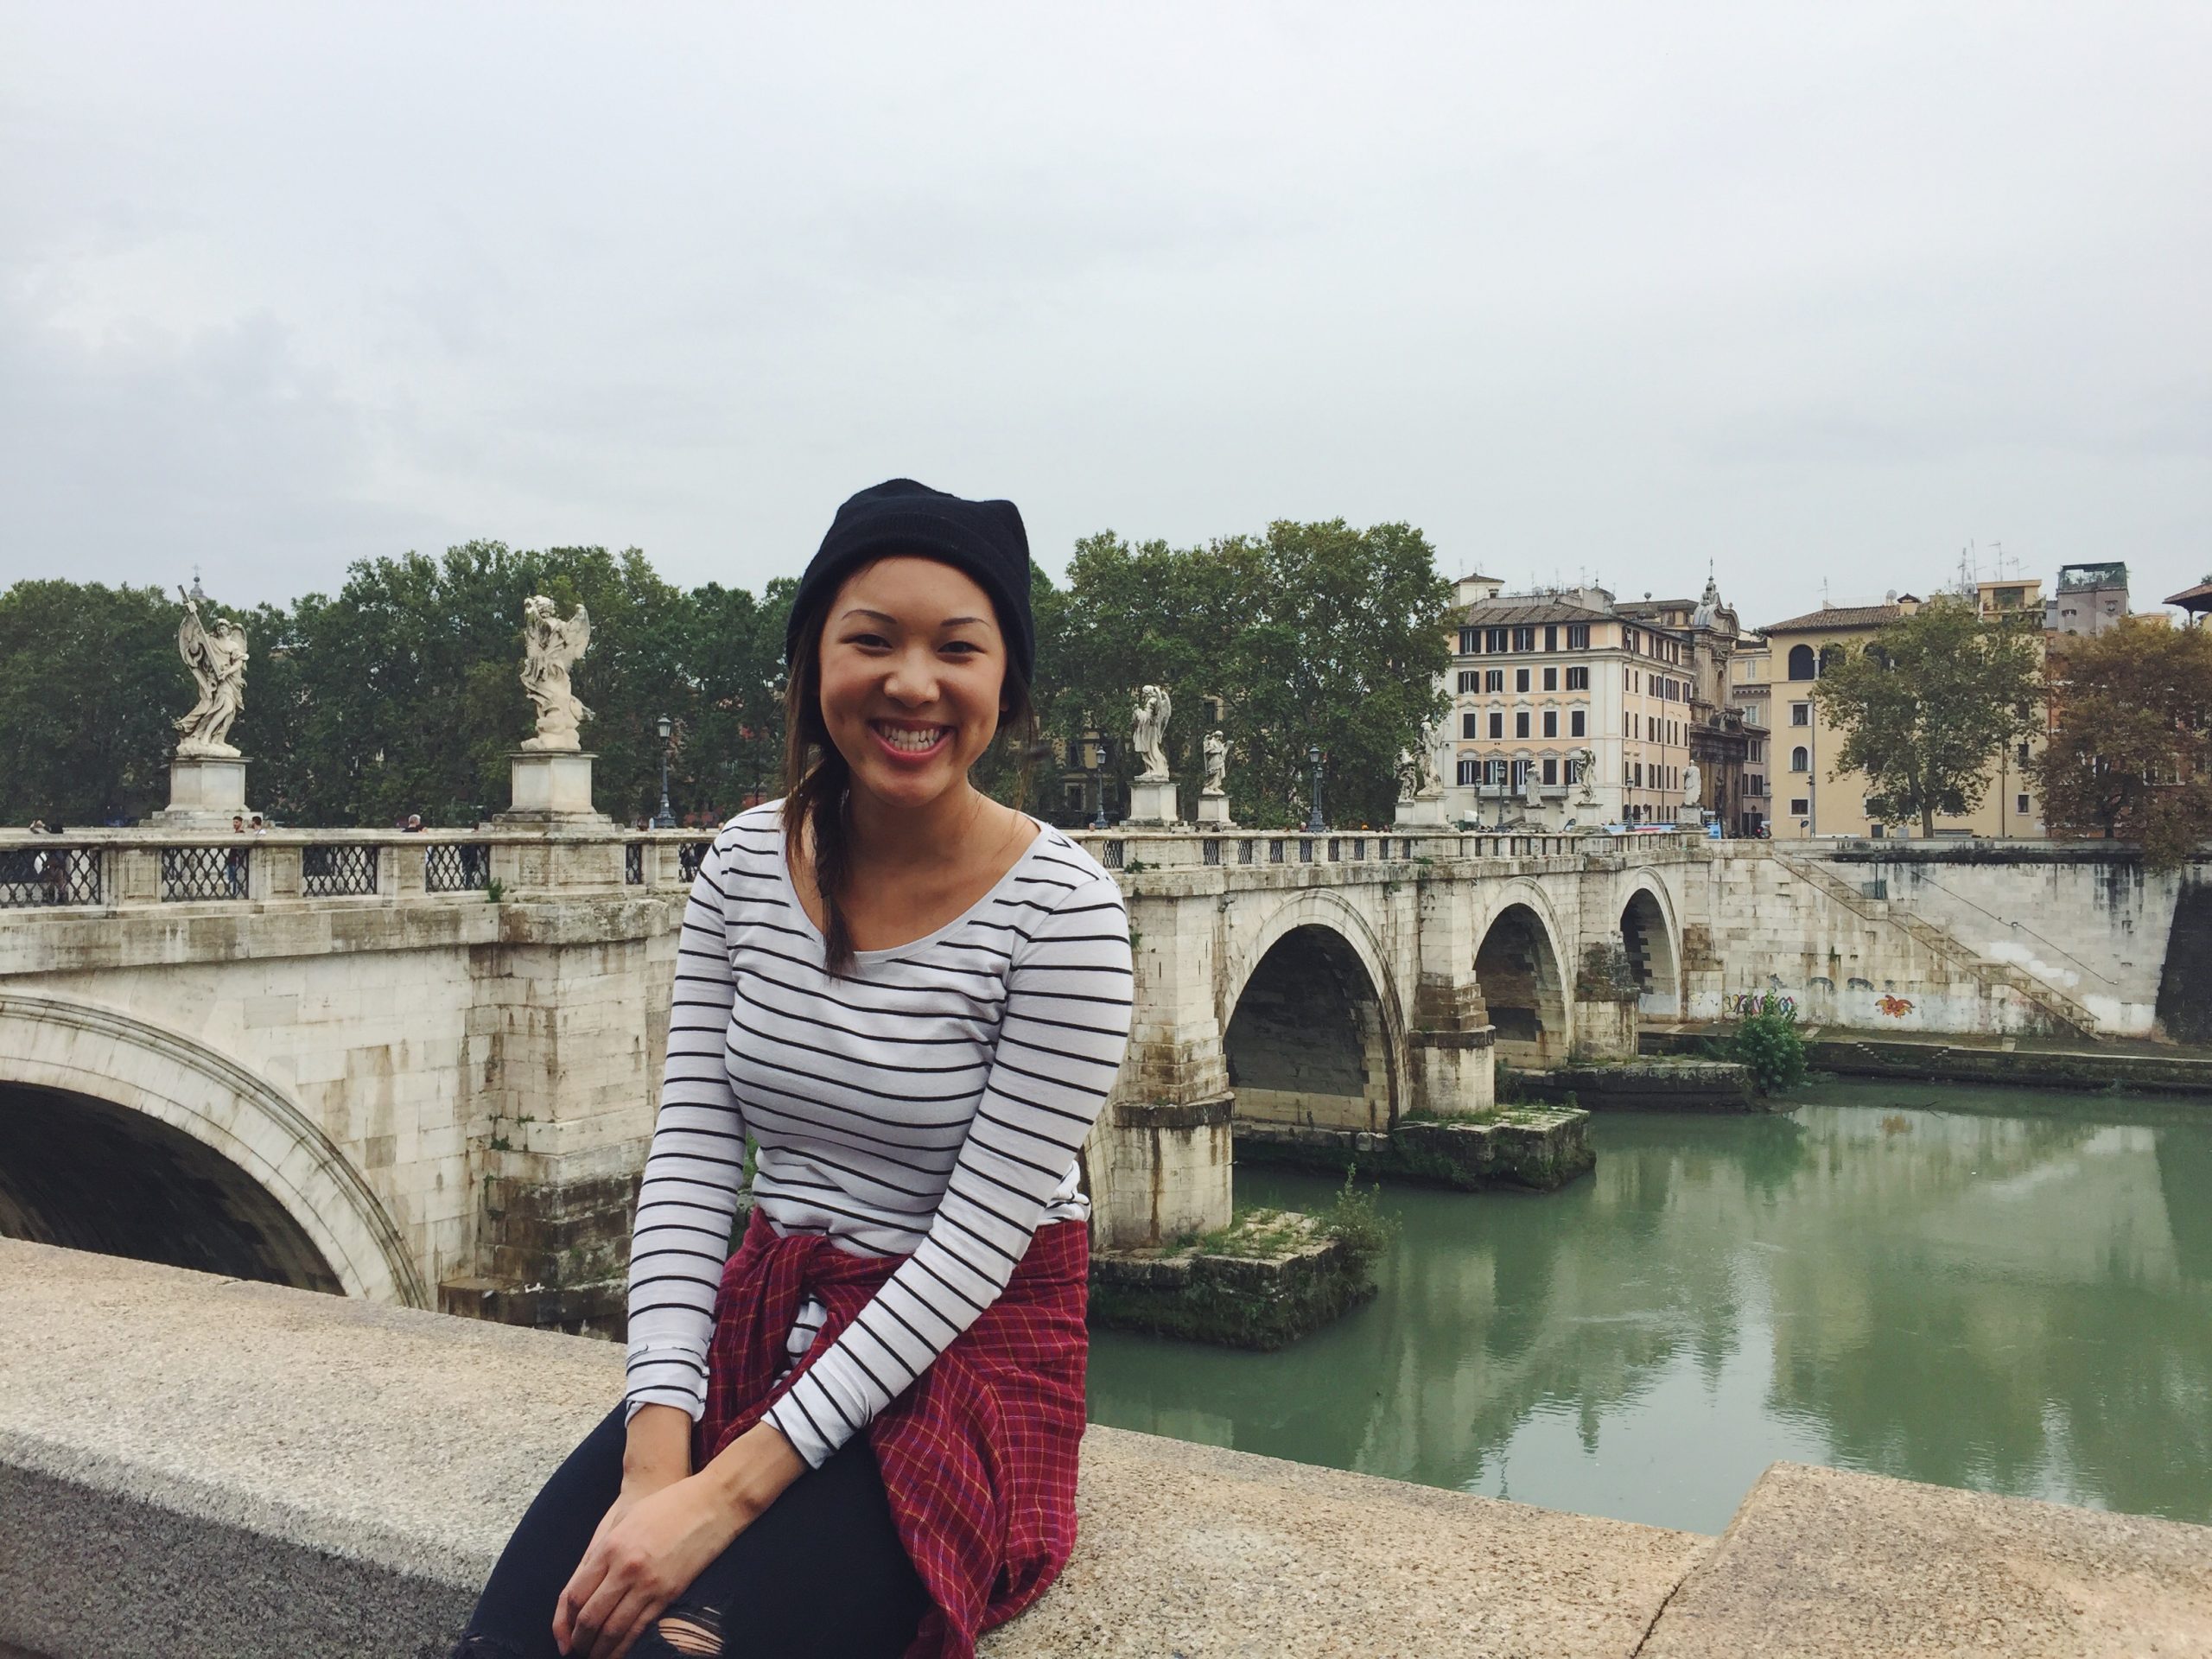 Me on bridge in Rome, Italy